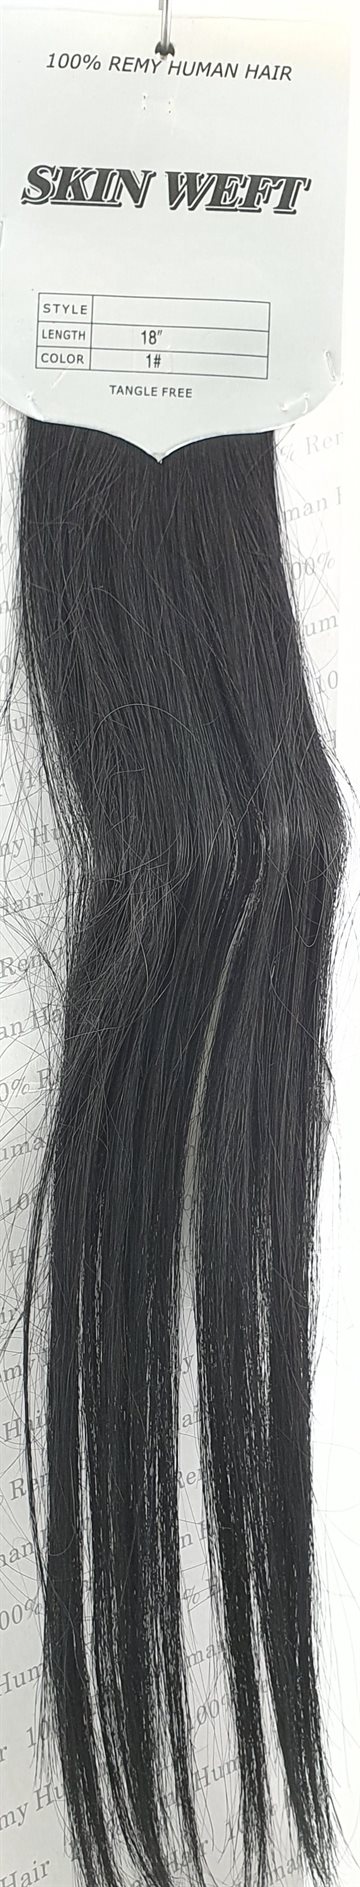 Human Hair - Skin Weft hair, color 1 Black 18" (45 cm. length.)